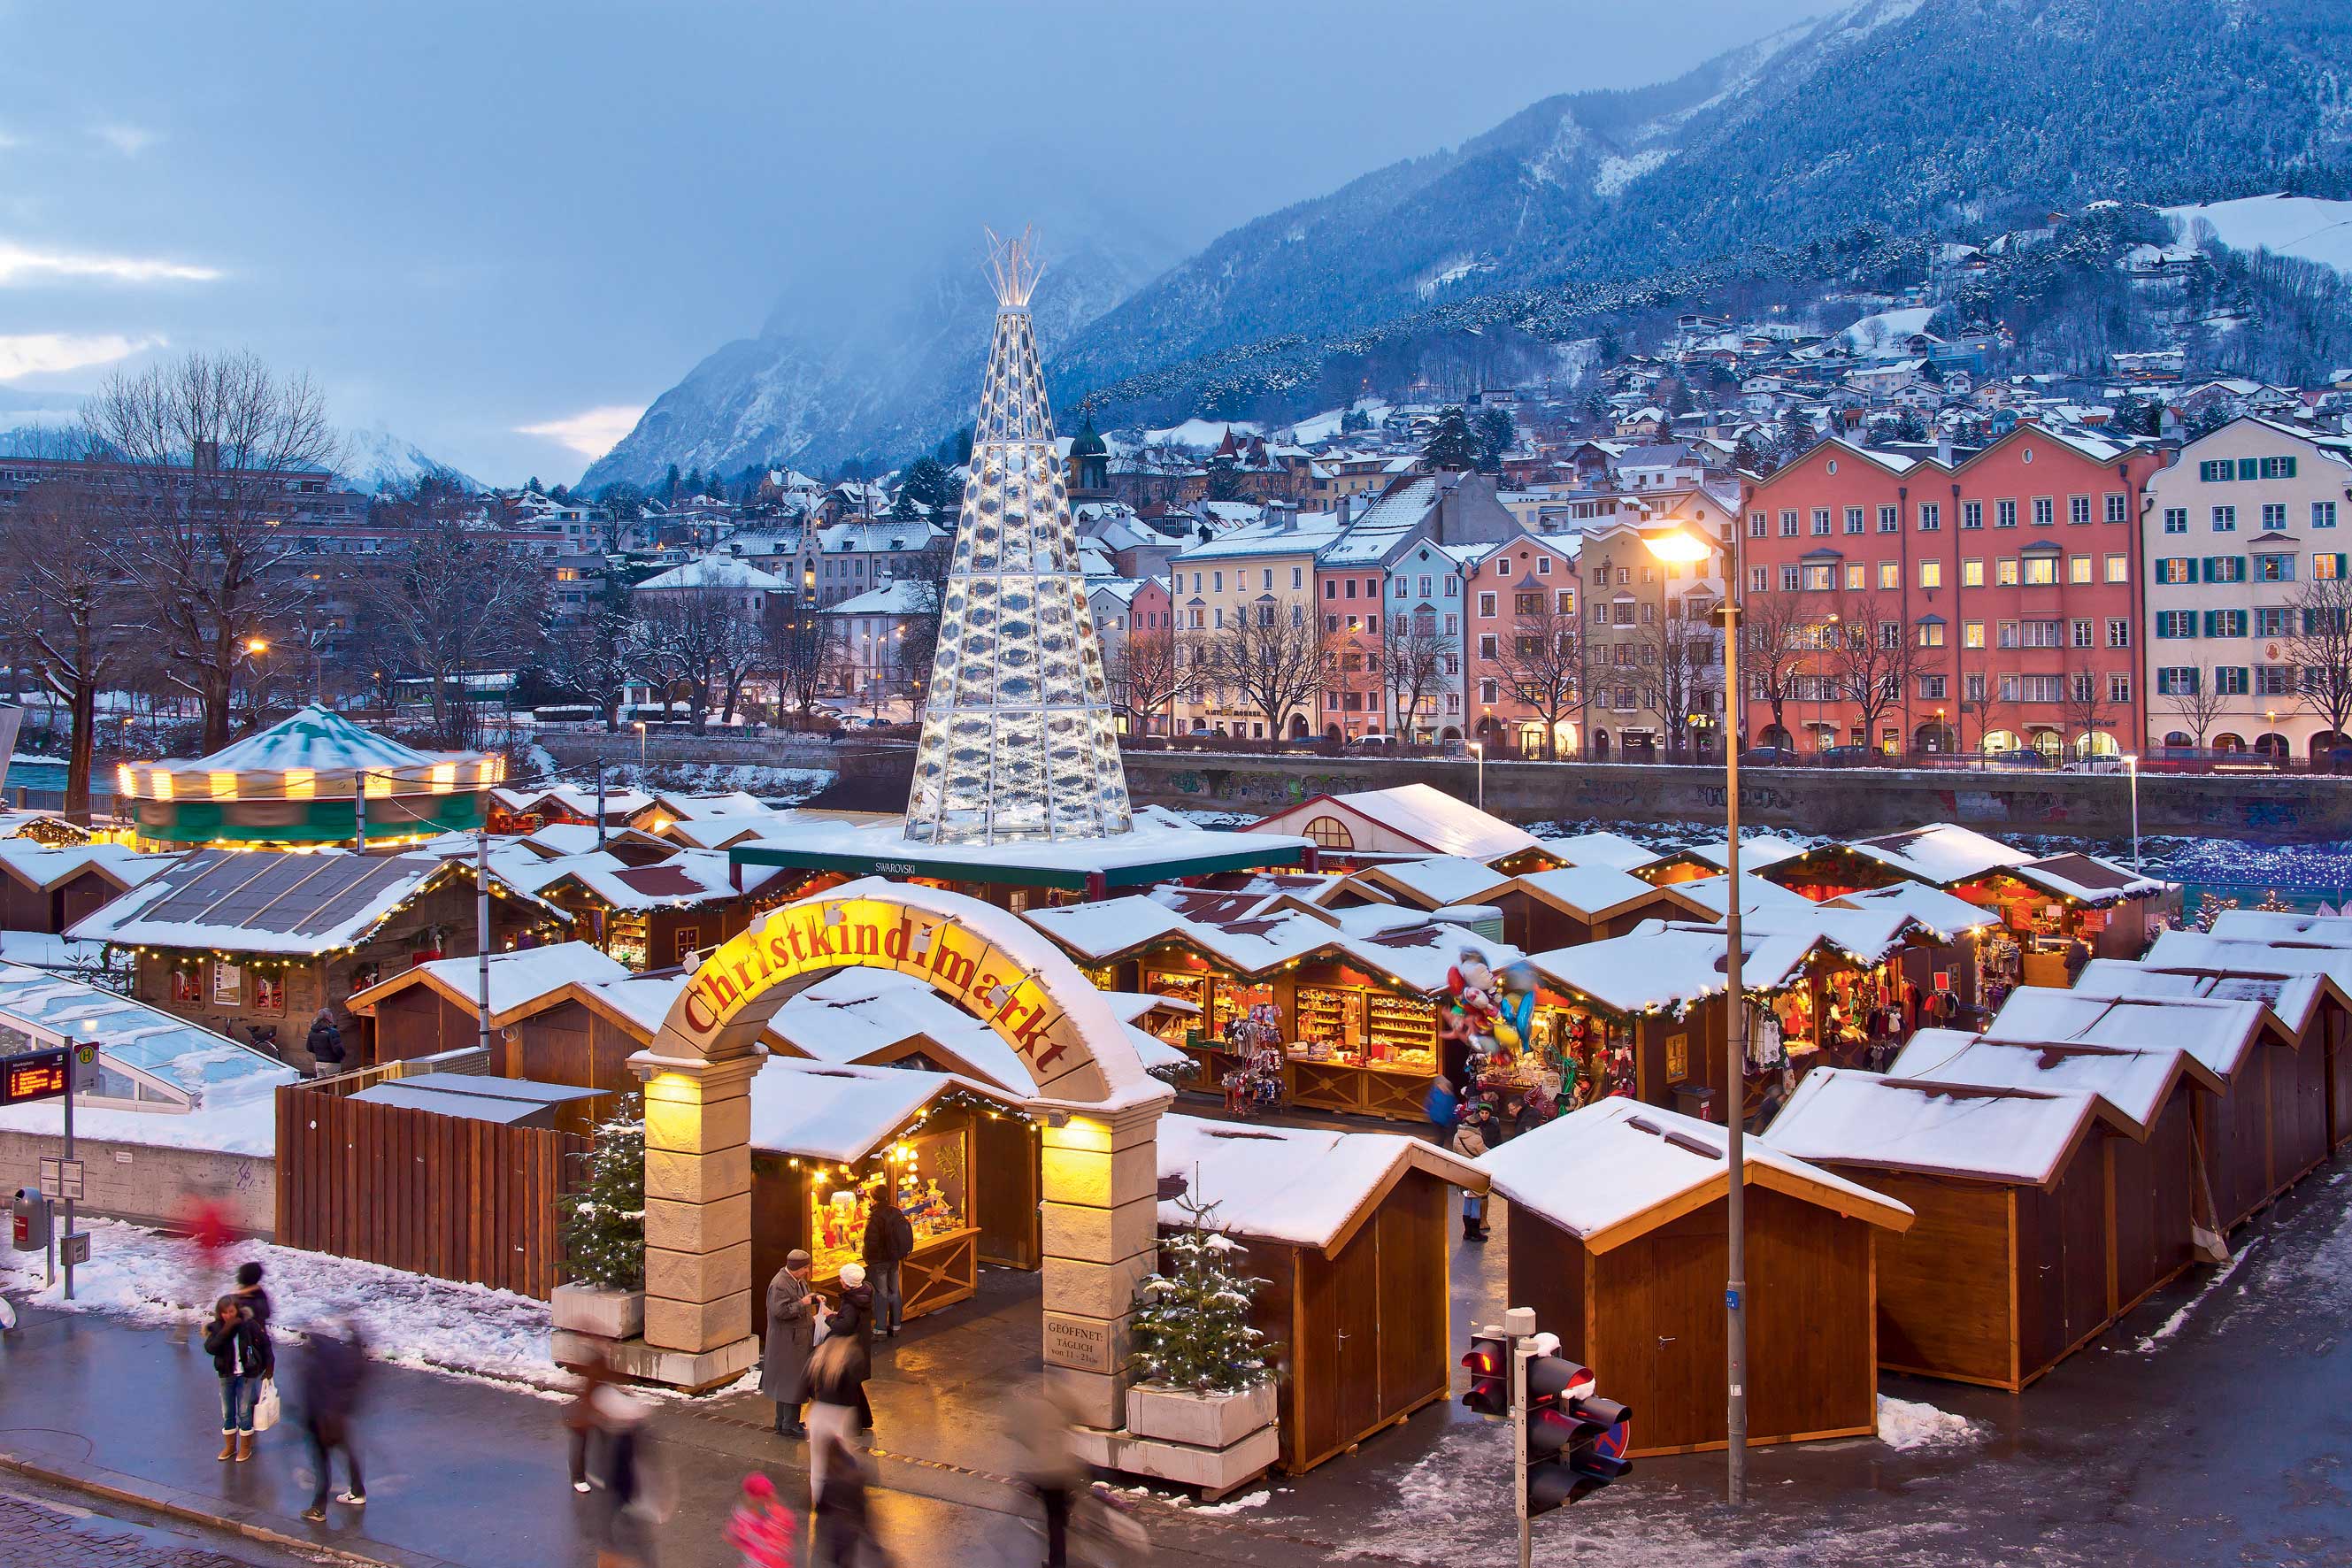 Foto Mercatini Di Natale Innsbruck.Innsbruck E La Magia Dei Mercatini Di Natale Dove Viaggi